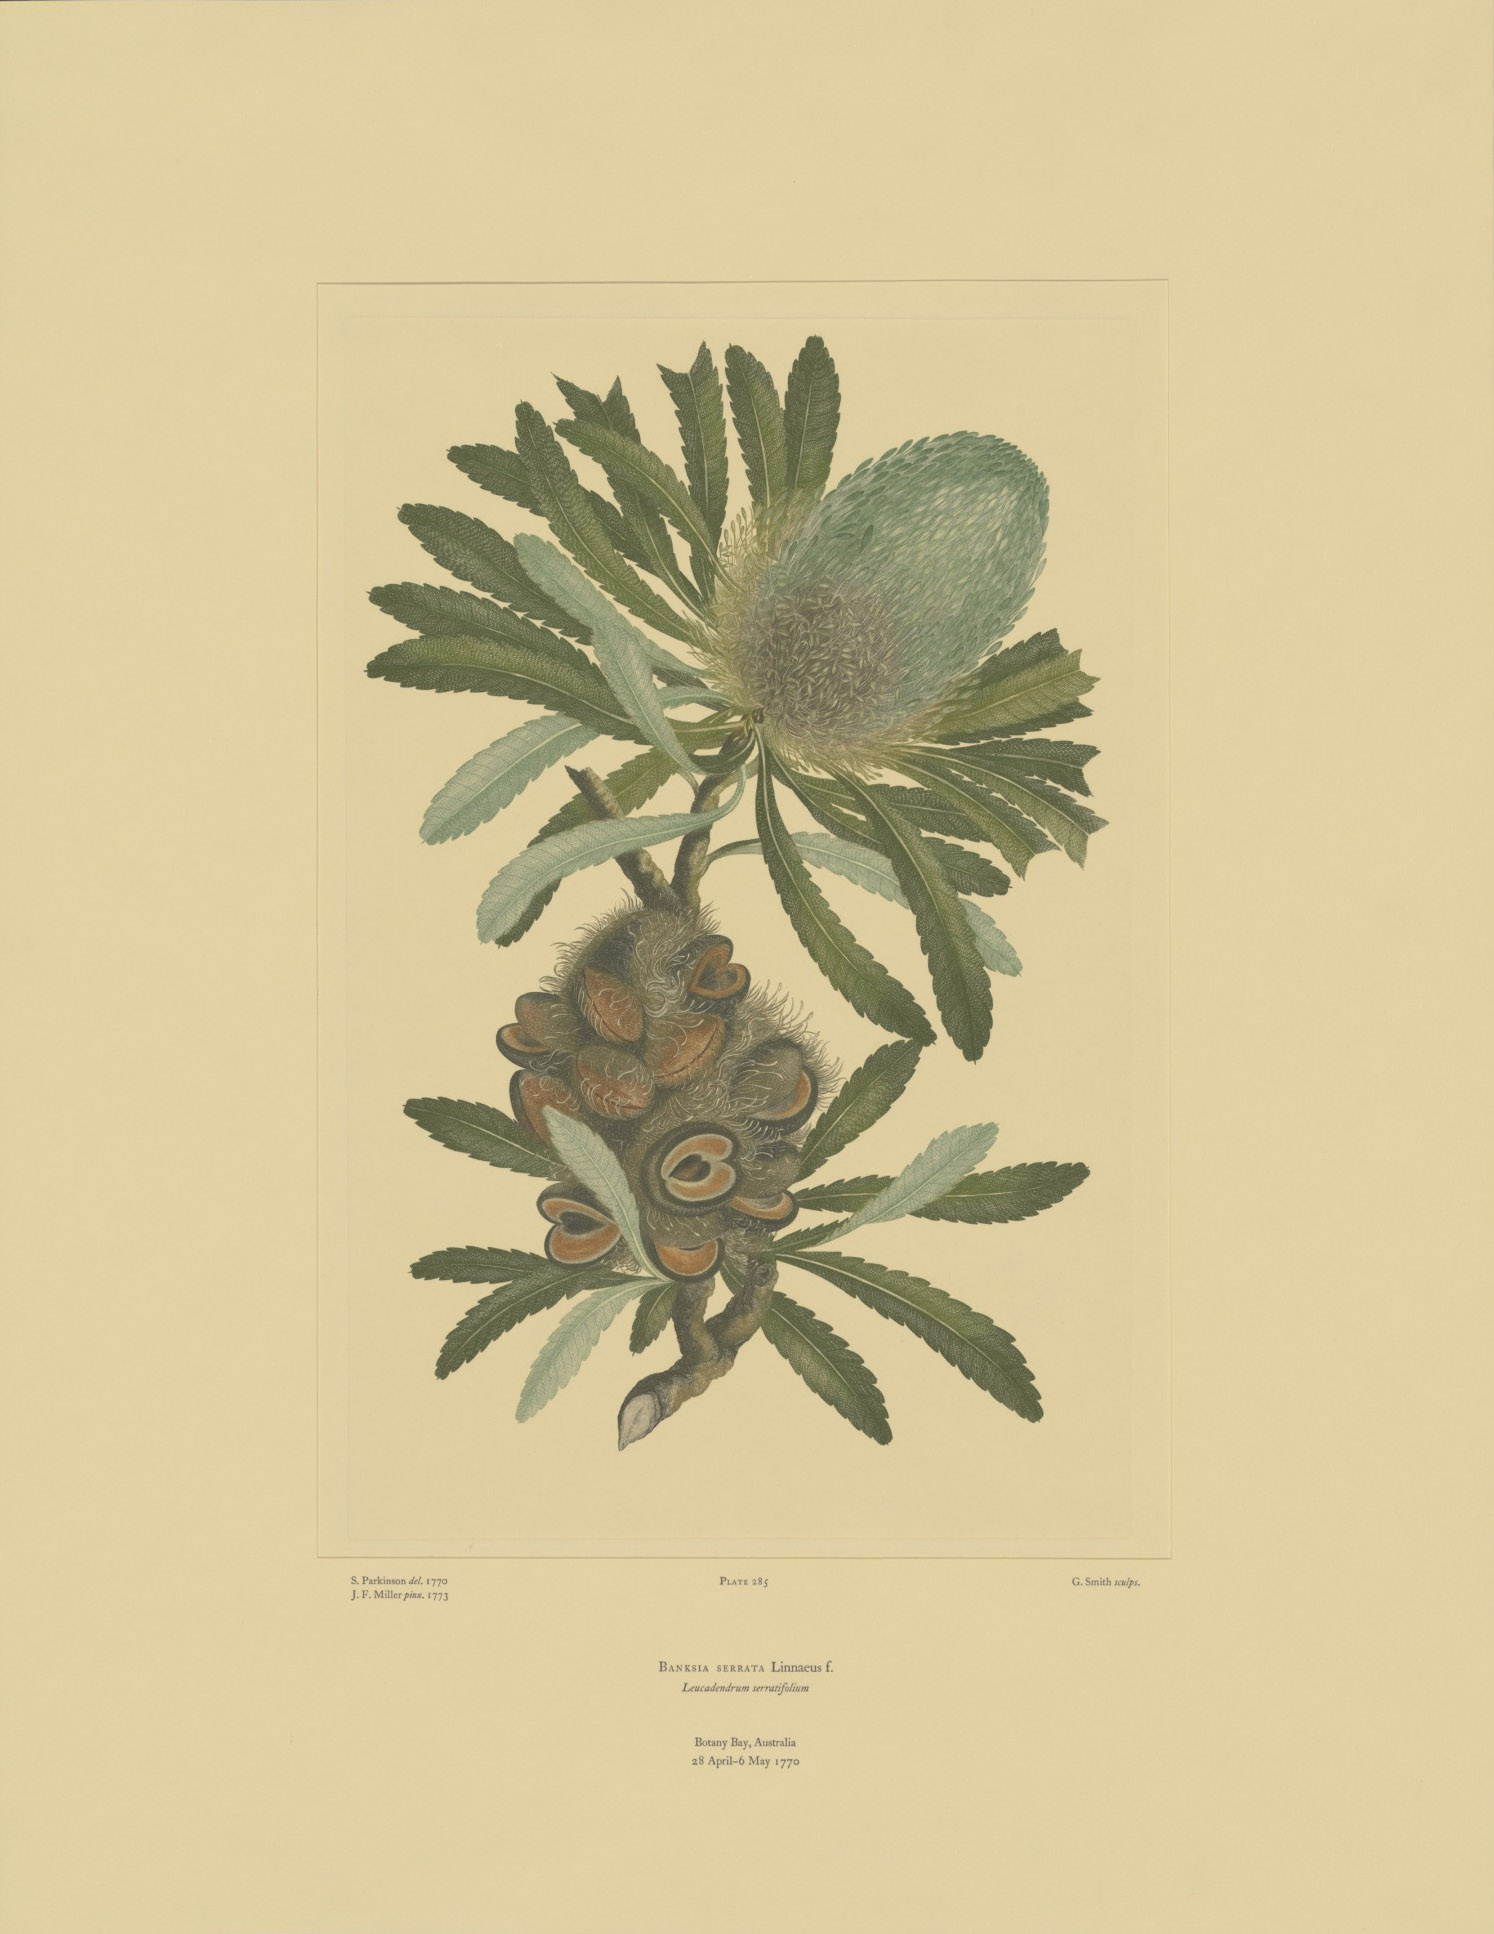 Banksia serrata’ from Joseph Banks’ Florilegium.